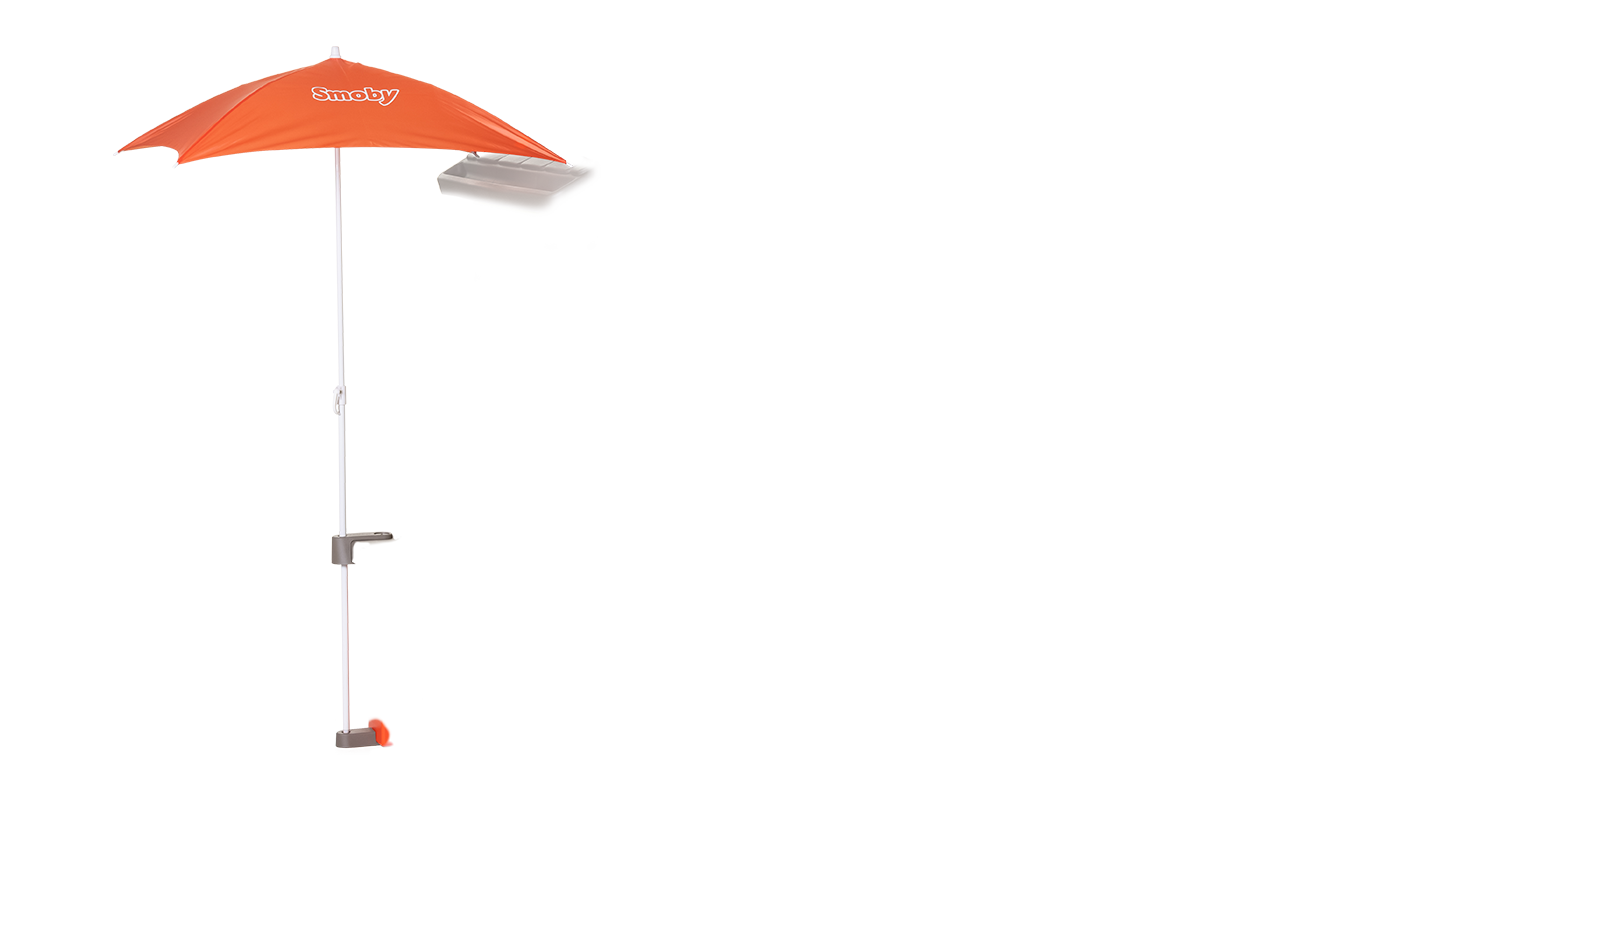 Căsuța Prieteni versiune nouă Neo Friends House Smoby cu grădină, se poate completa cu burlan, lampă, umbrelă și alte accesorii filtru UV 172 cm înălțime